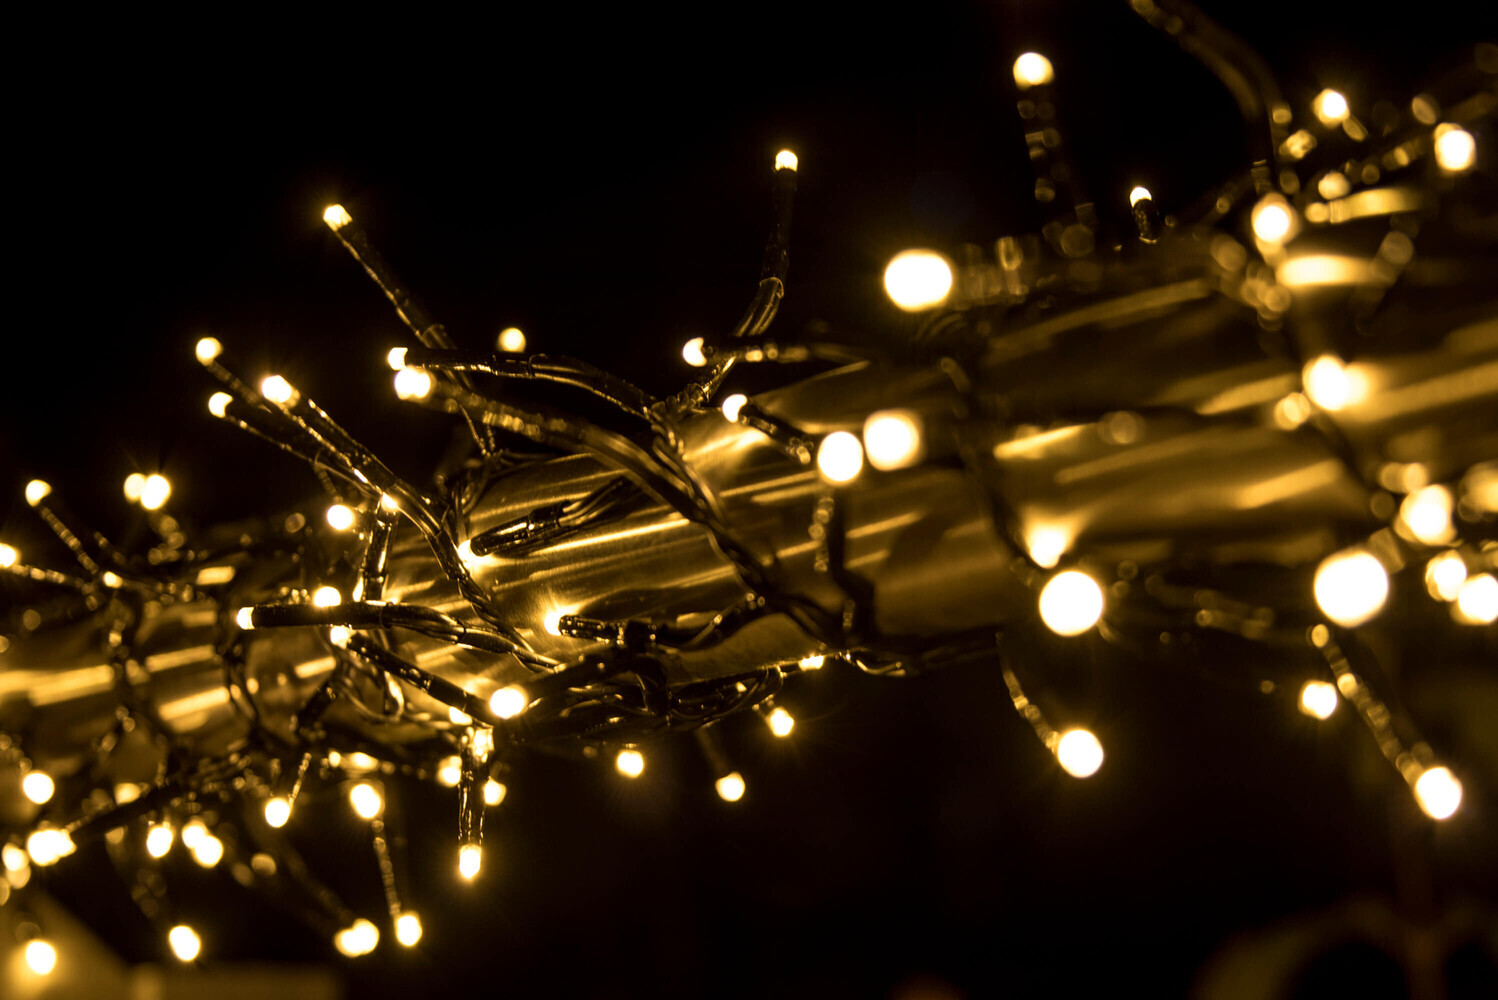 LED Büschellichterkette warmweiß von LED Universum, ca 7m Länge, 480LEDs, 3m Zuleitung. Cluster Lichterkette für innen und außen, spritzwassergeschützt. Stimmungsbeleuchtung für Weihnachten, Feier, Wohnzimmer, Garten, Terasse.